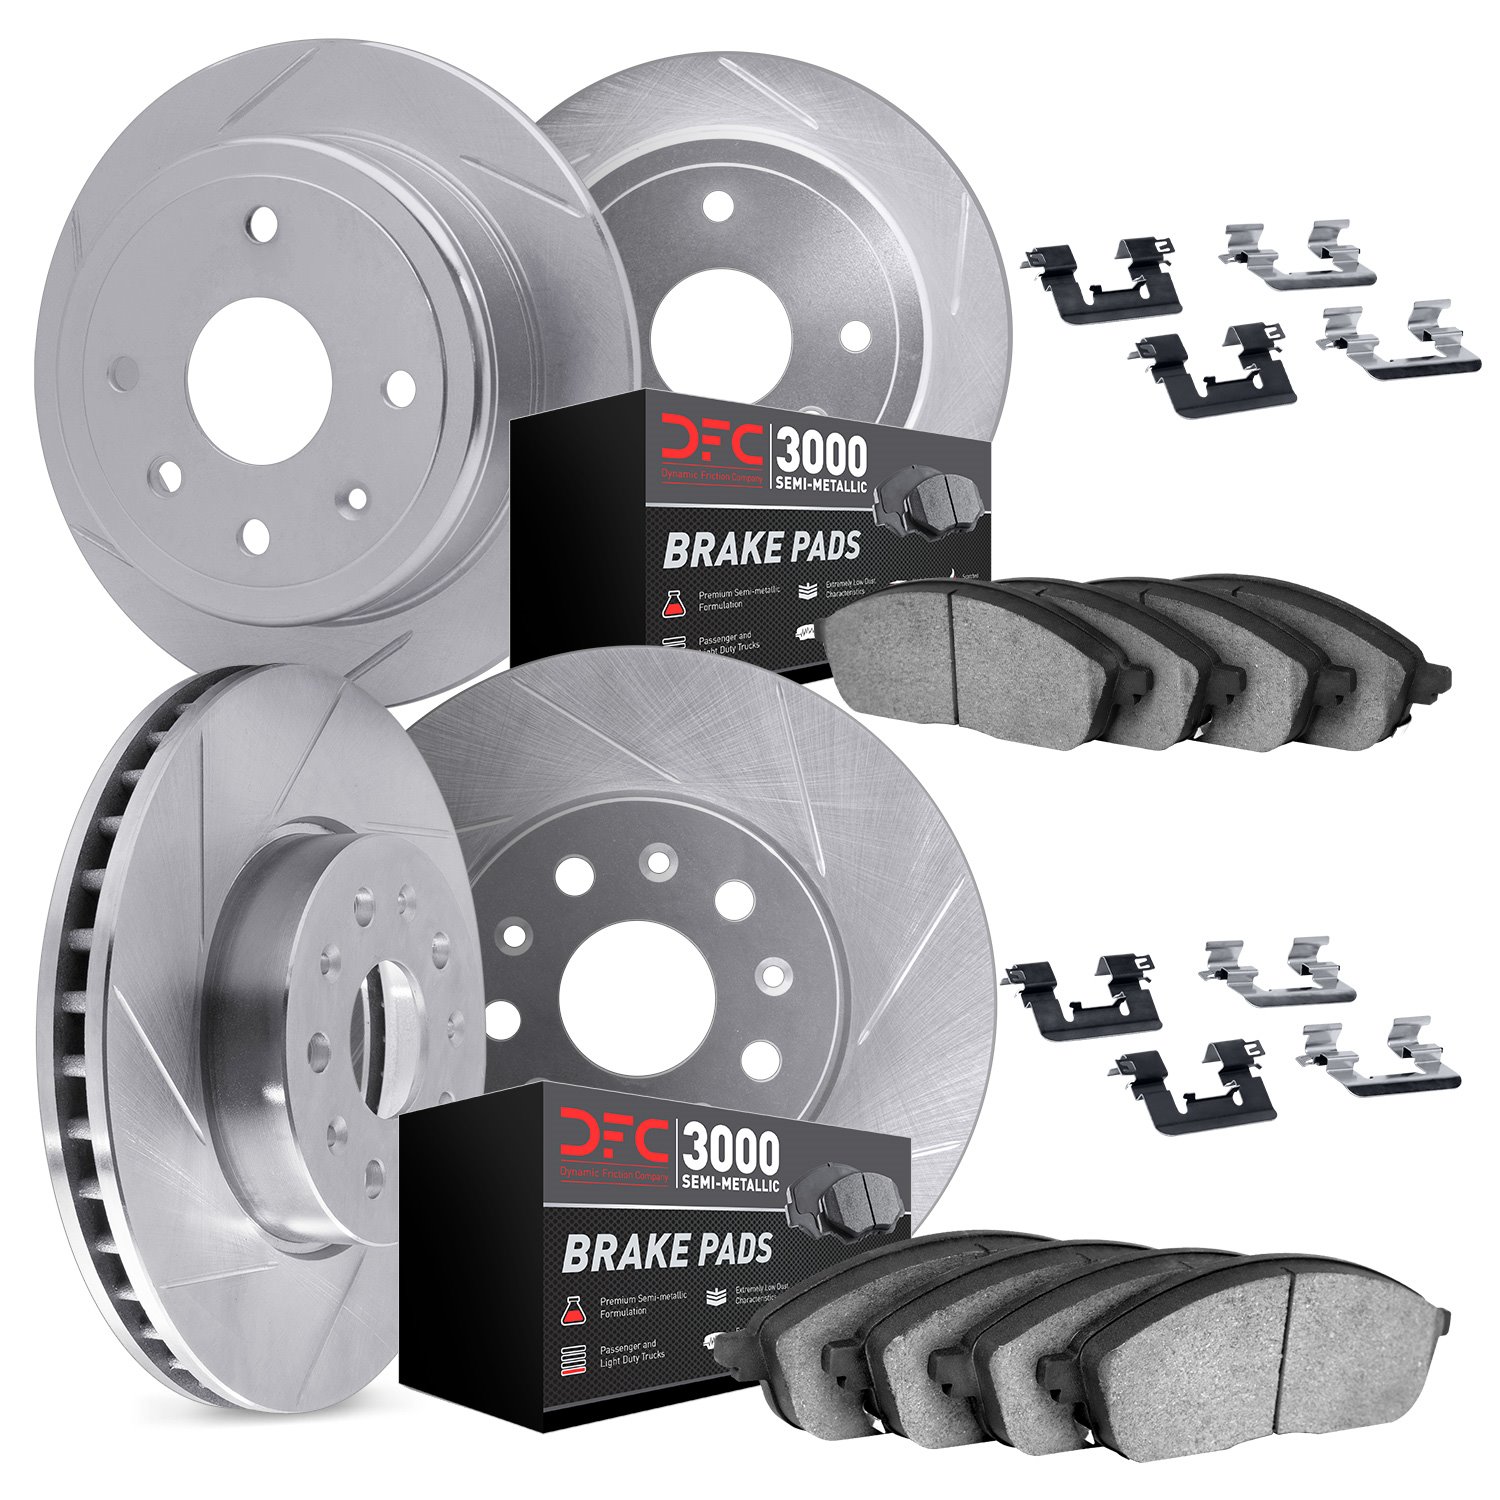 5114-63132 Slotted Brake Rotors with 3000-Series Semi-Metallic Brake Pads Kit & Hardware [Silver], 2012-2018 Mercedes-Benz, Posi